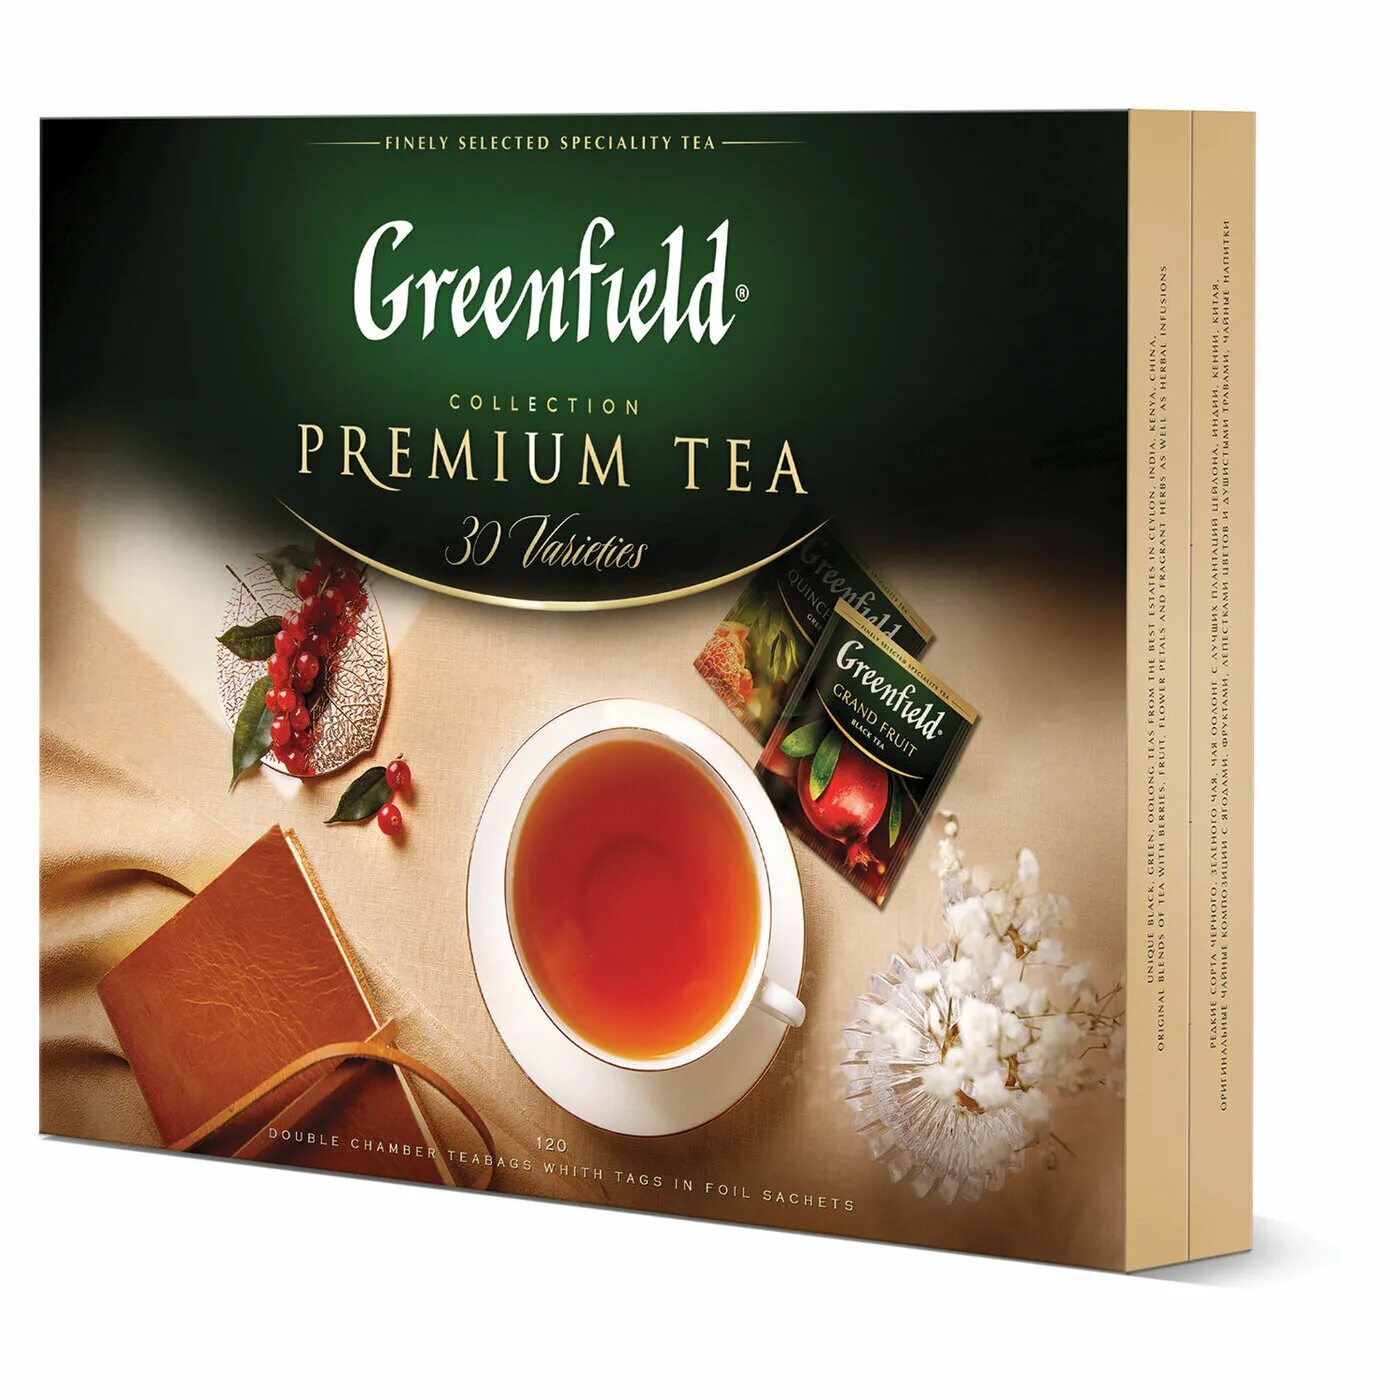 Greenfield collection. Чай Greenfield Premium Tea ассорти 120 пакетиков. Greenfield Premium Tea collection, 120пак. Набор чая Гринфилд 120. Чайный подарочный набор Greenfield Premium Tea collection, 120 пакетиков.